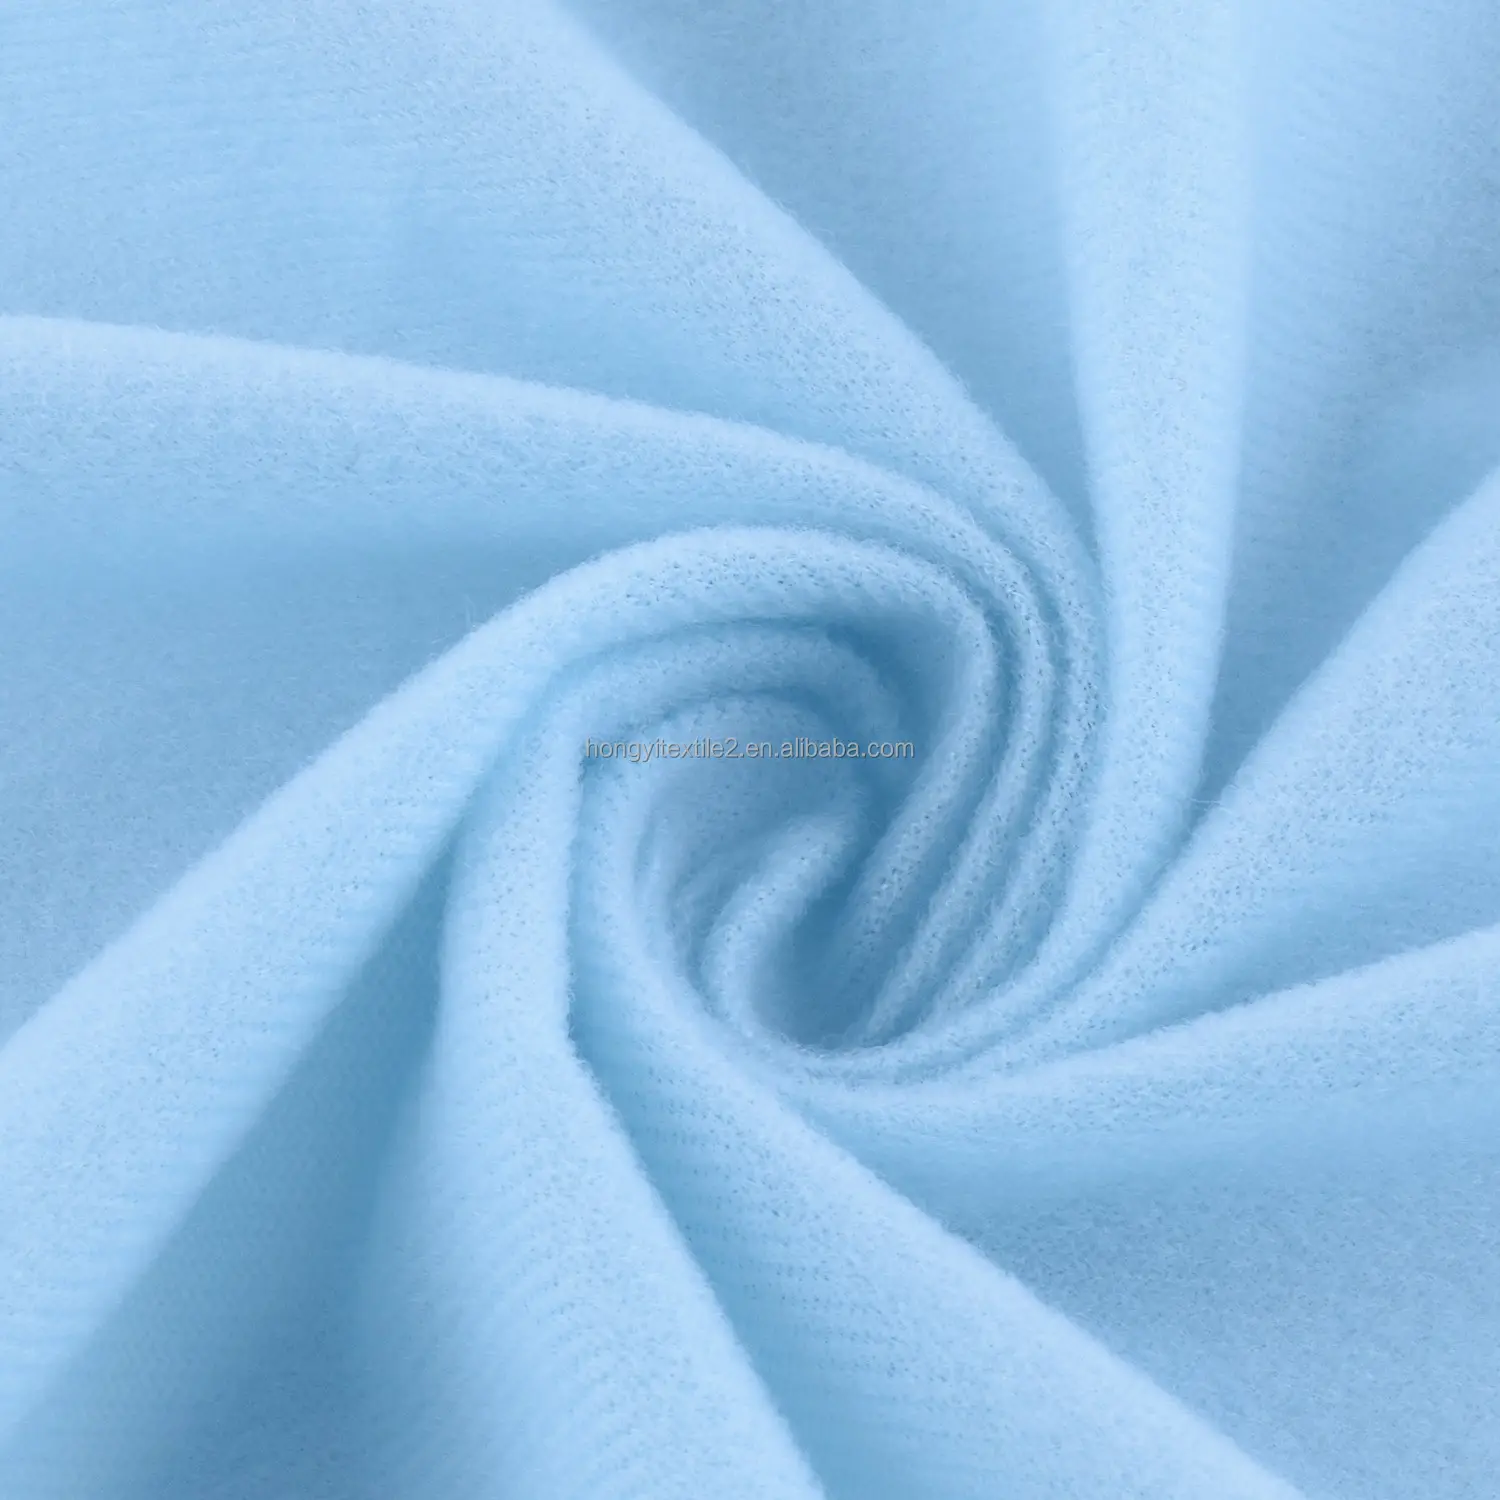 Fabricante en China al por mayor precio bajo 100% poliéster tejido tricot bucle tela terciopelo para ropa hogar textil sofá